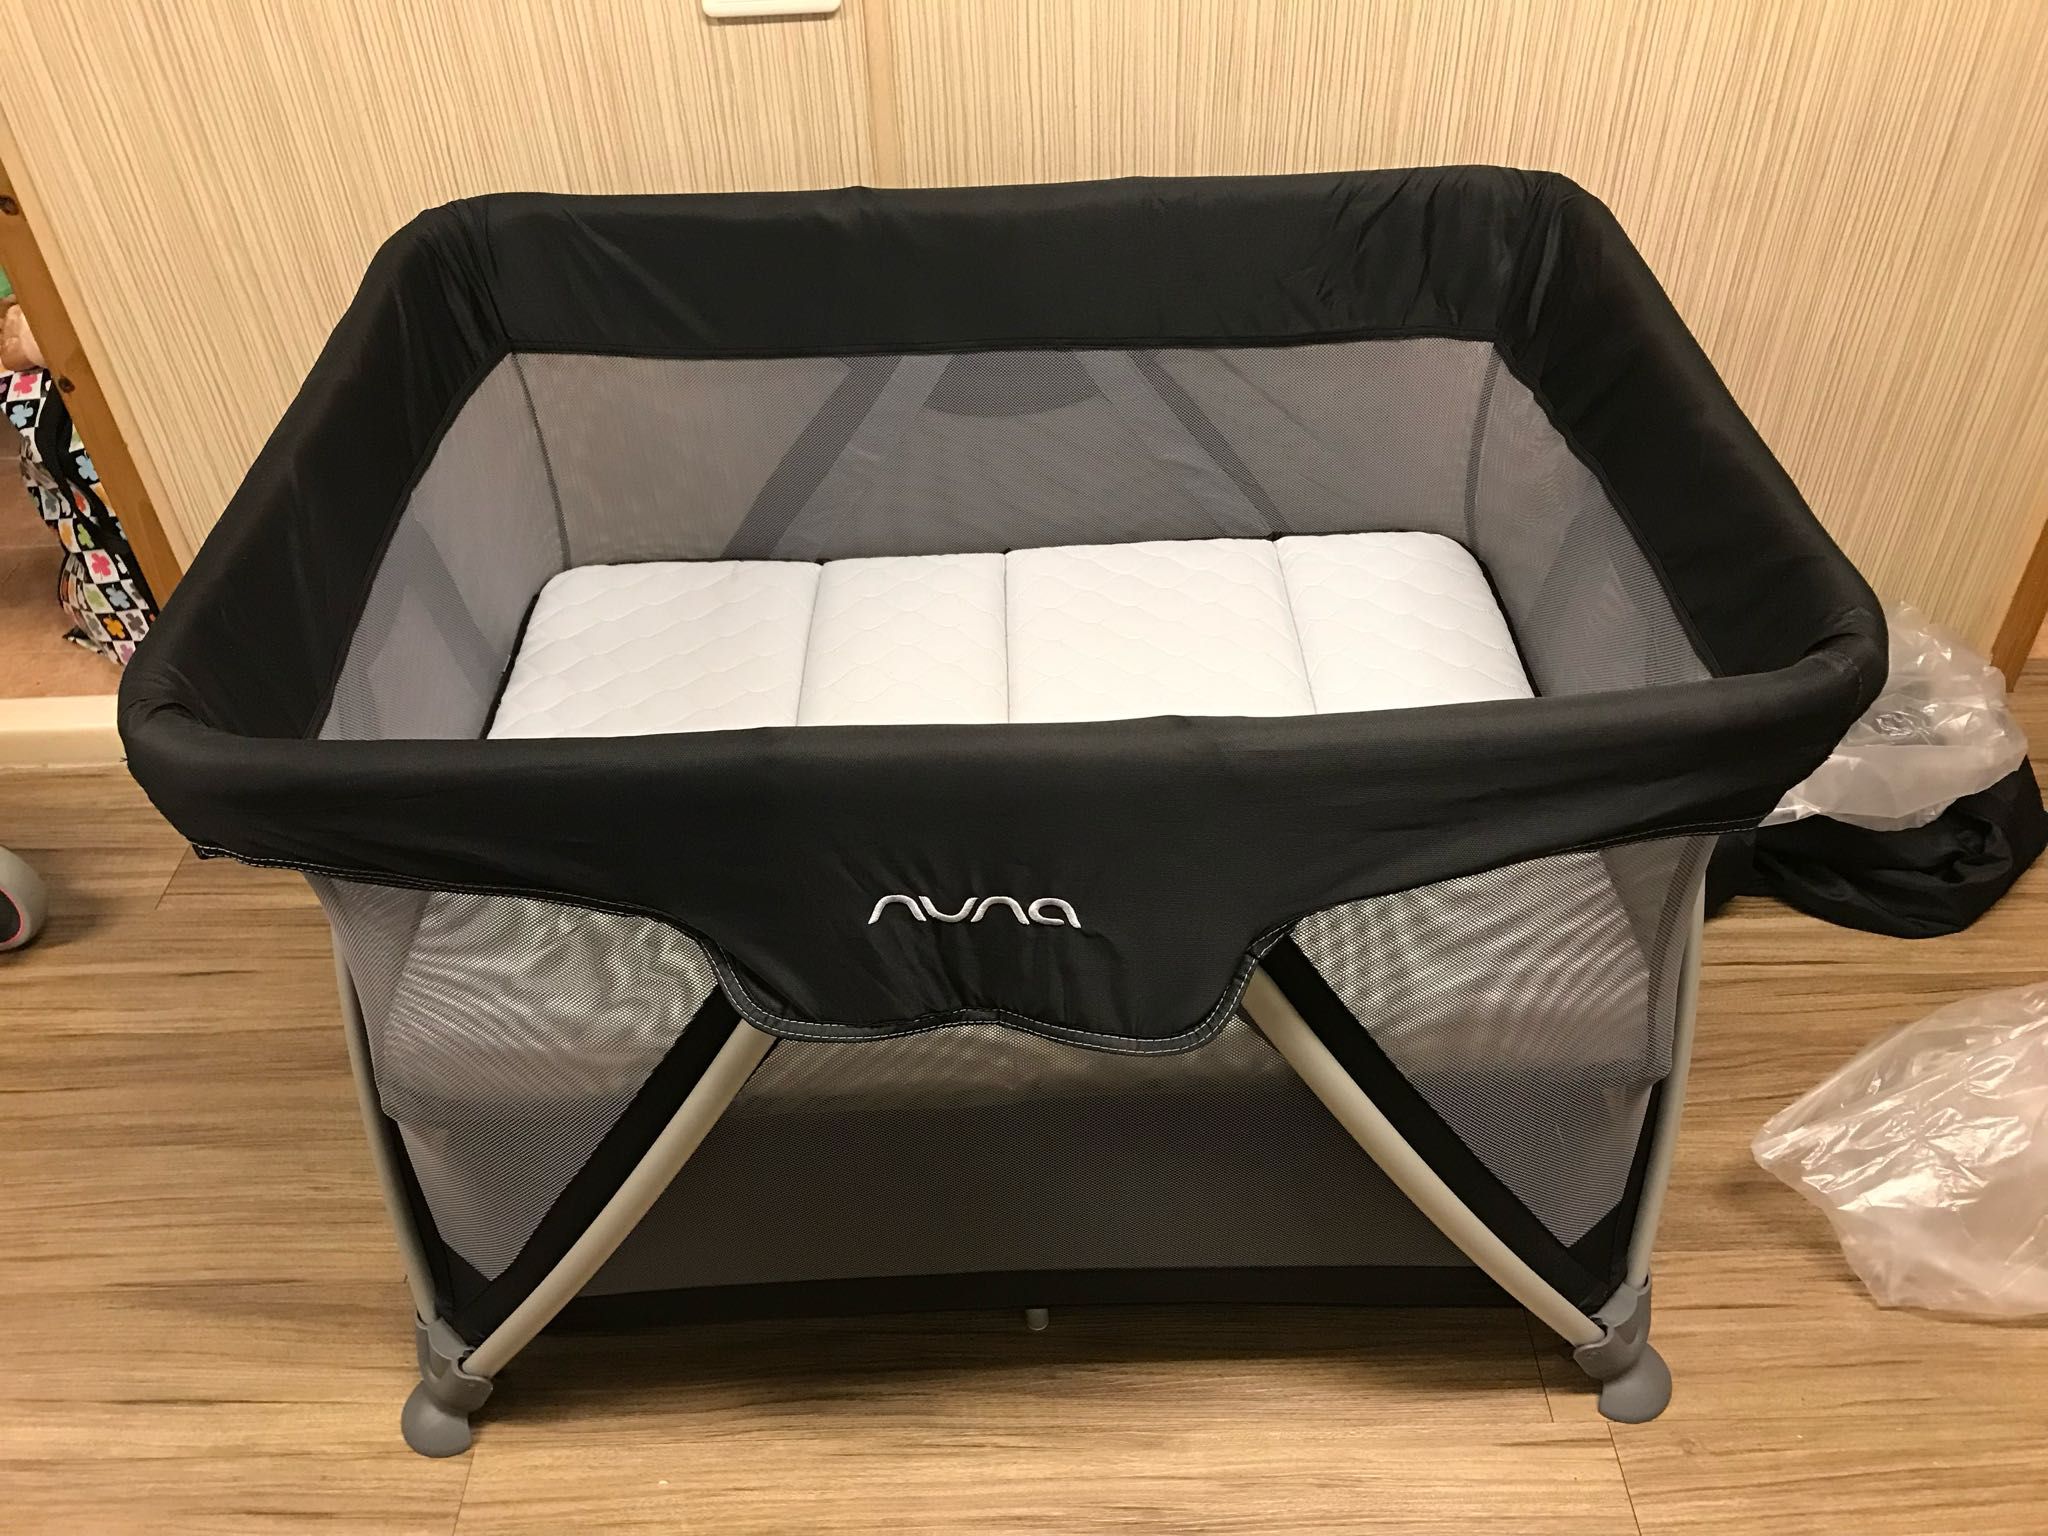 售 Nuna 遊戲床NT.5000